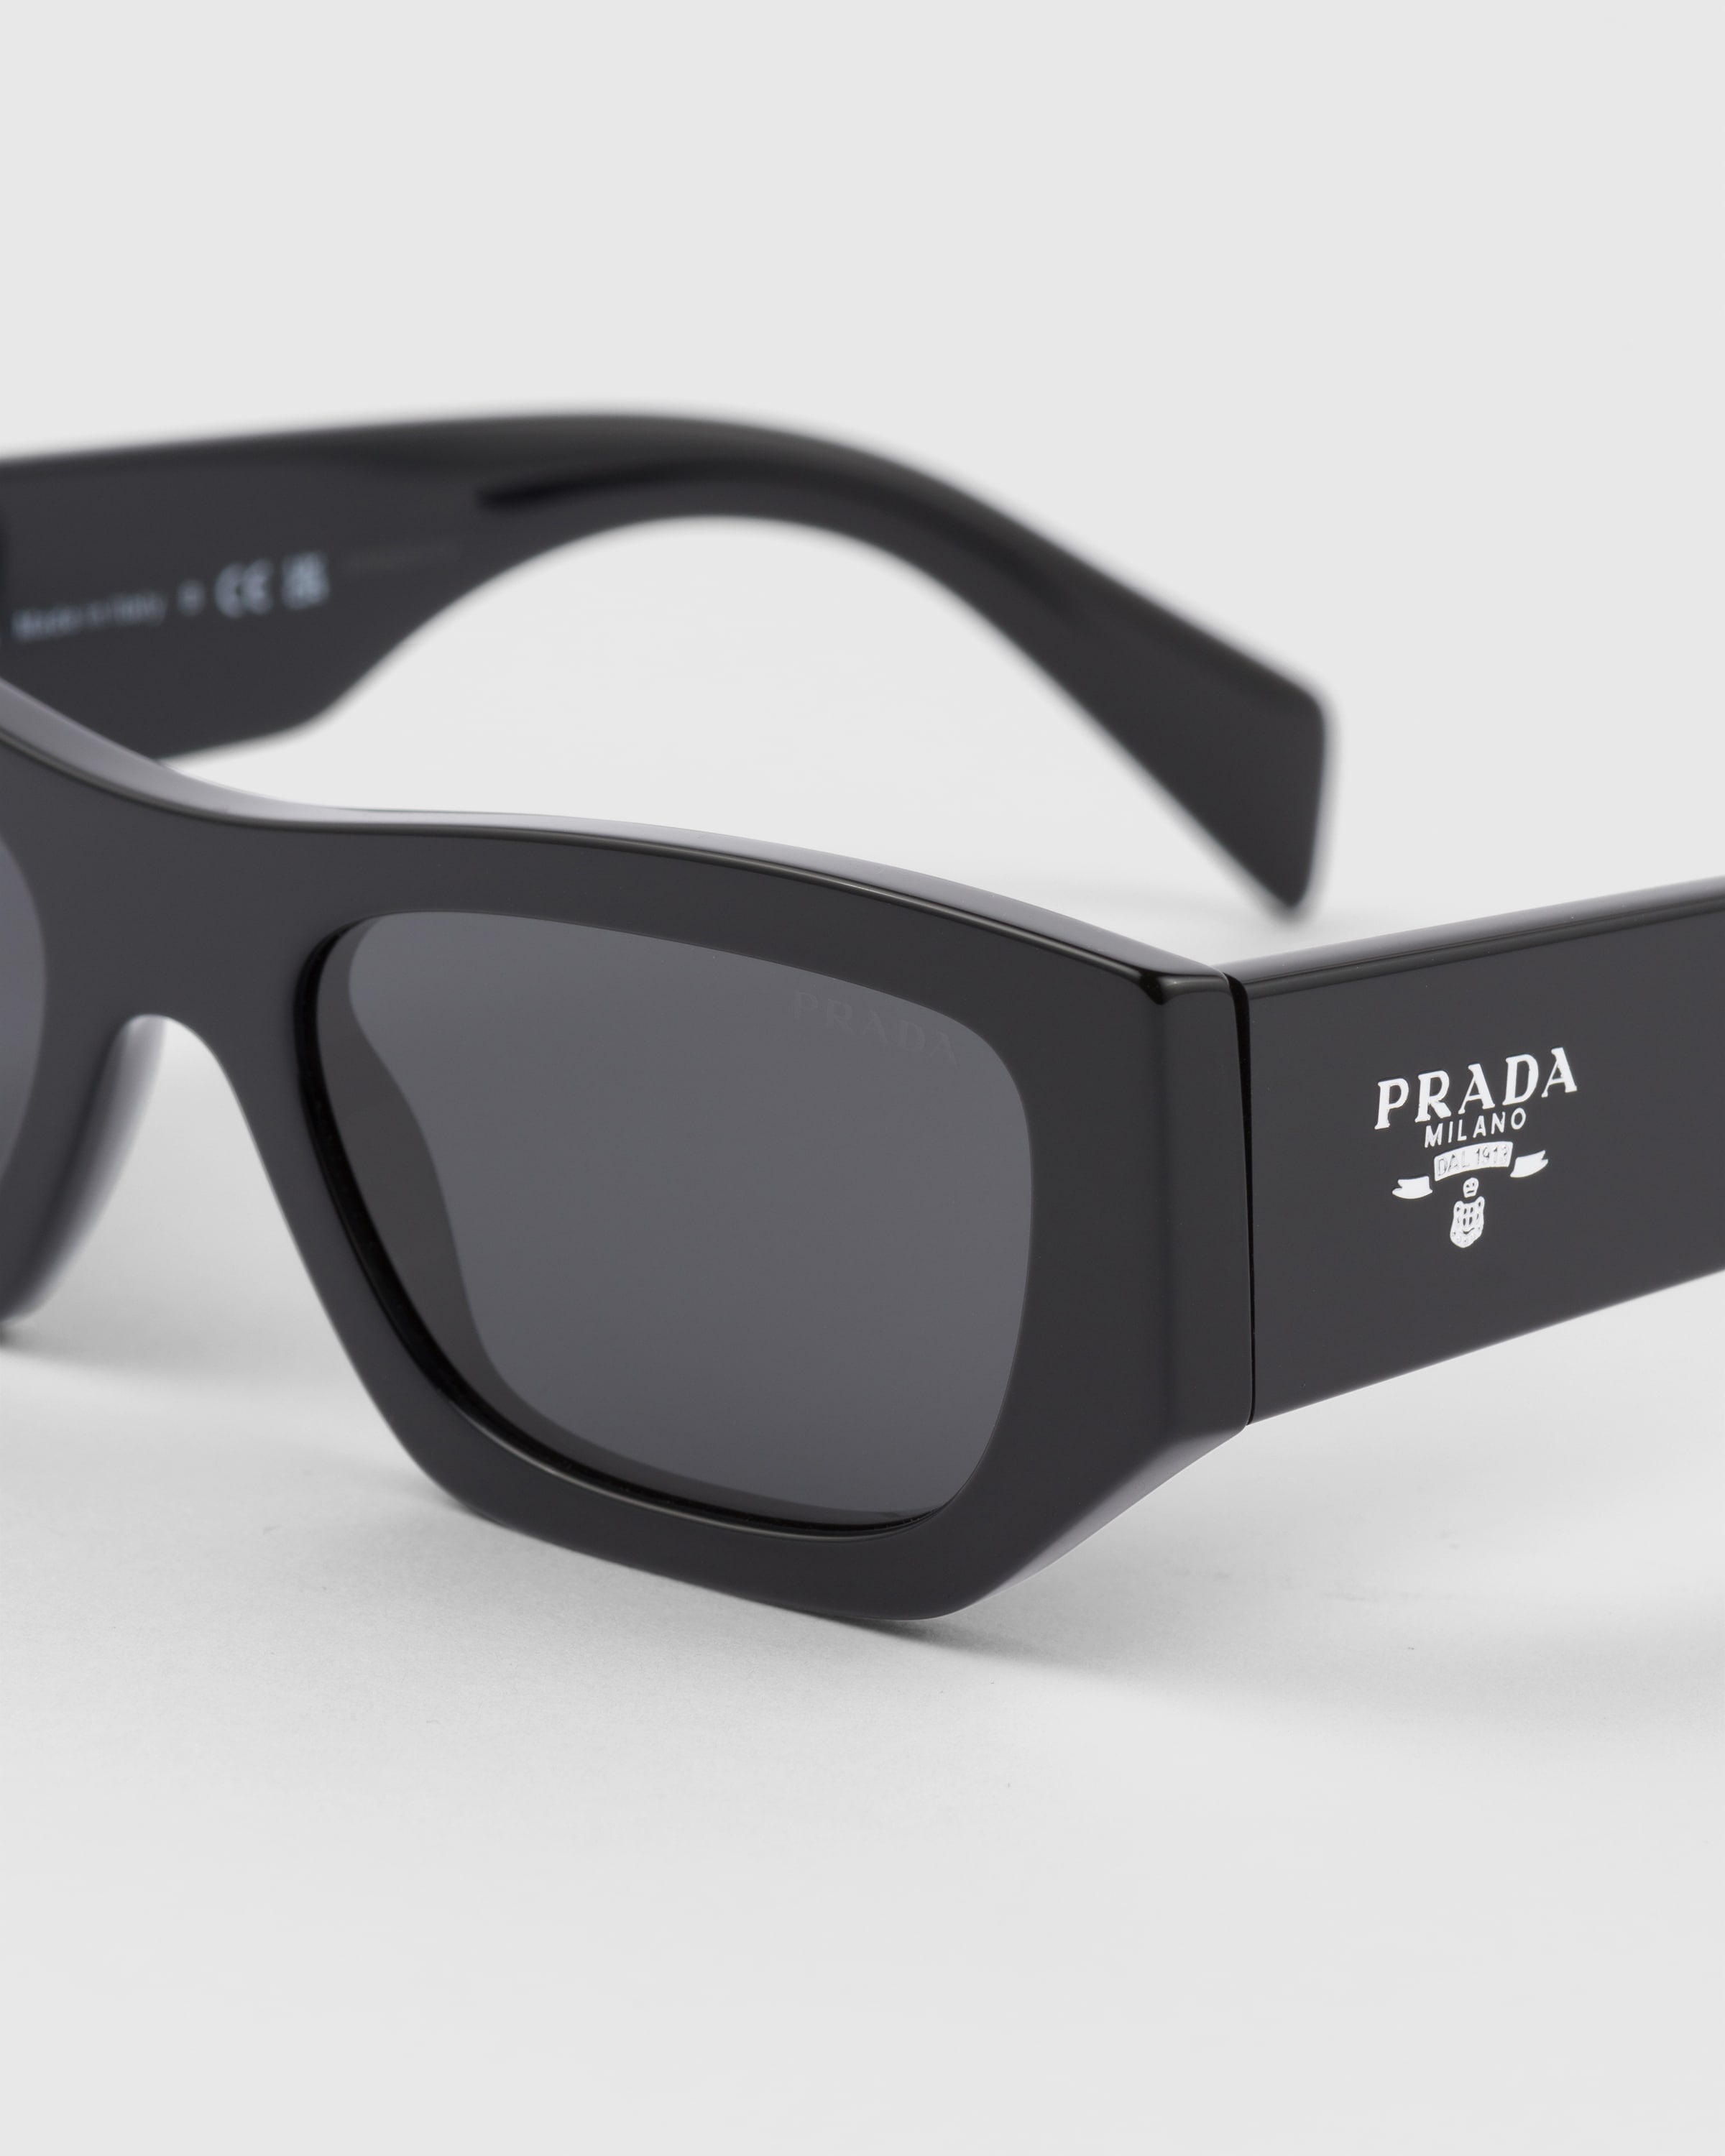 Sunglasses with Prada logo - 5